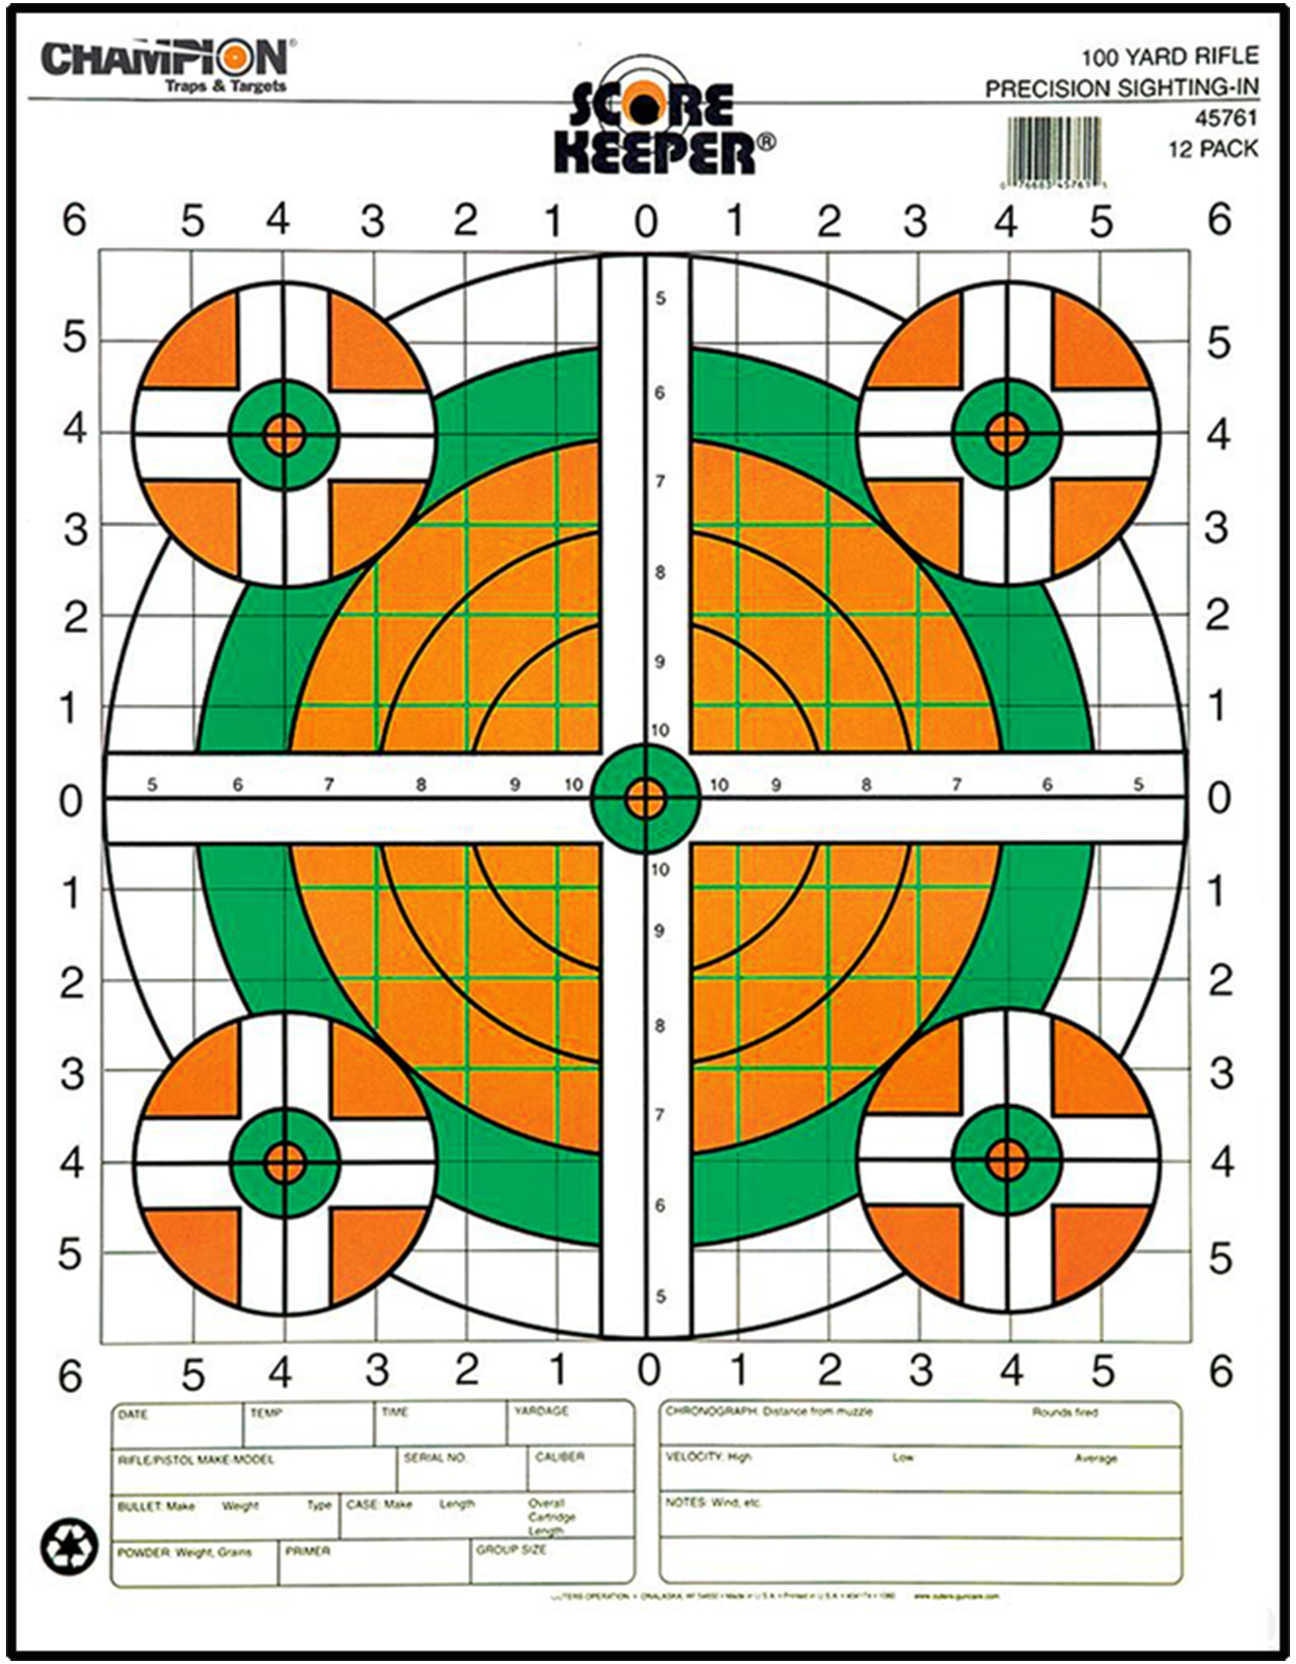 Score Keeper Fluorescent Orange & Green Bull Targe-img-1